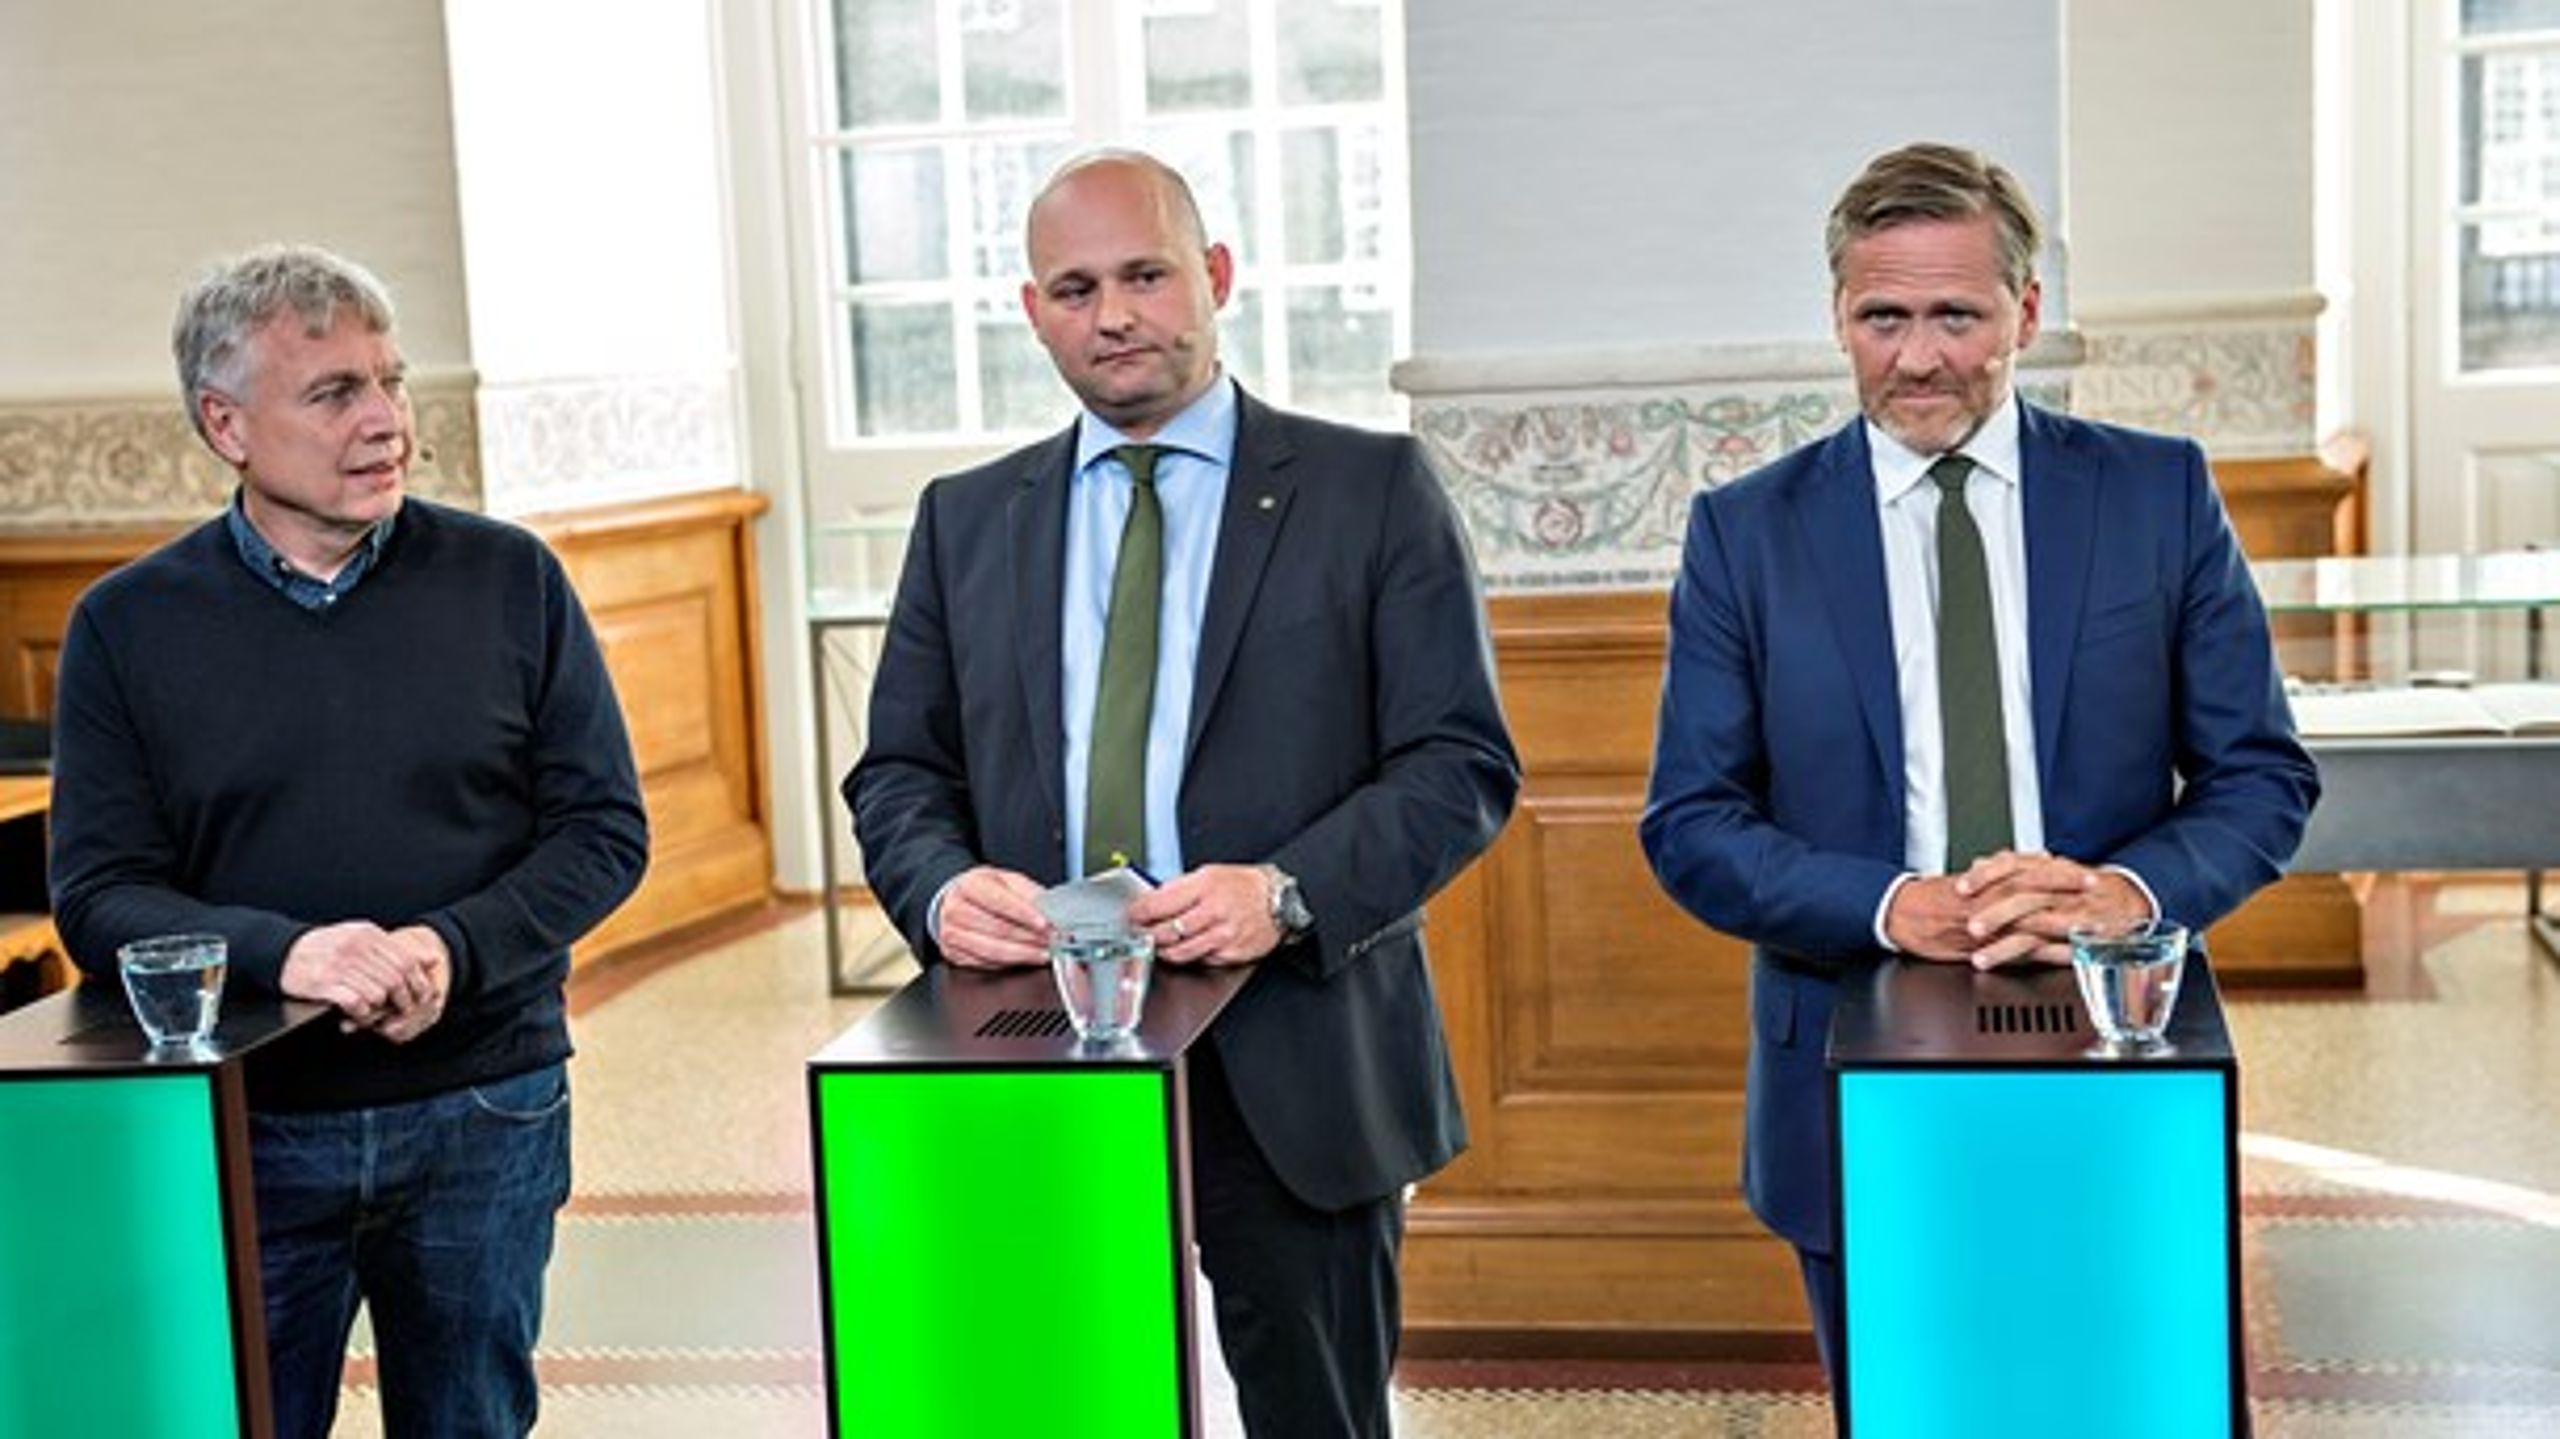 Uffe Elbæk (ALT, tv.) og Anders Samuelsen (LA, th.) henter mange unge vælgere hos de øvrige partier.